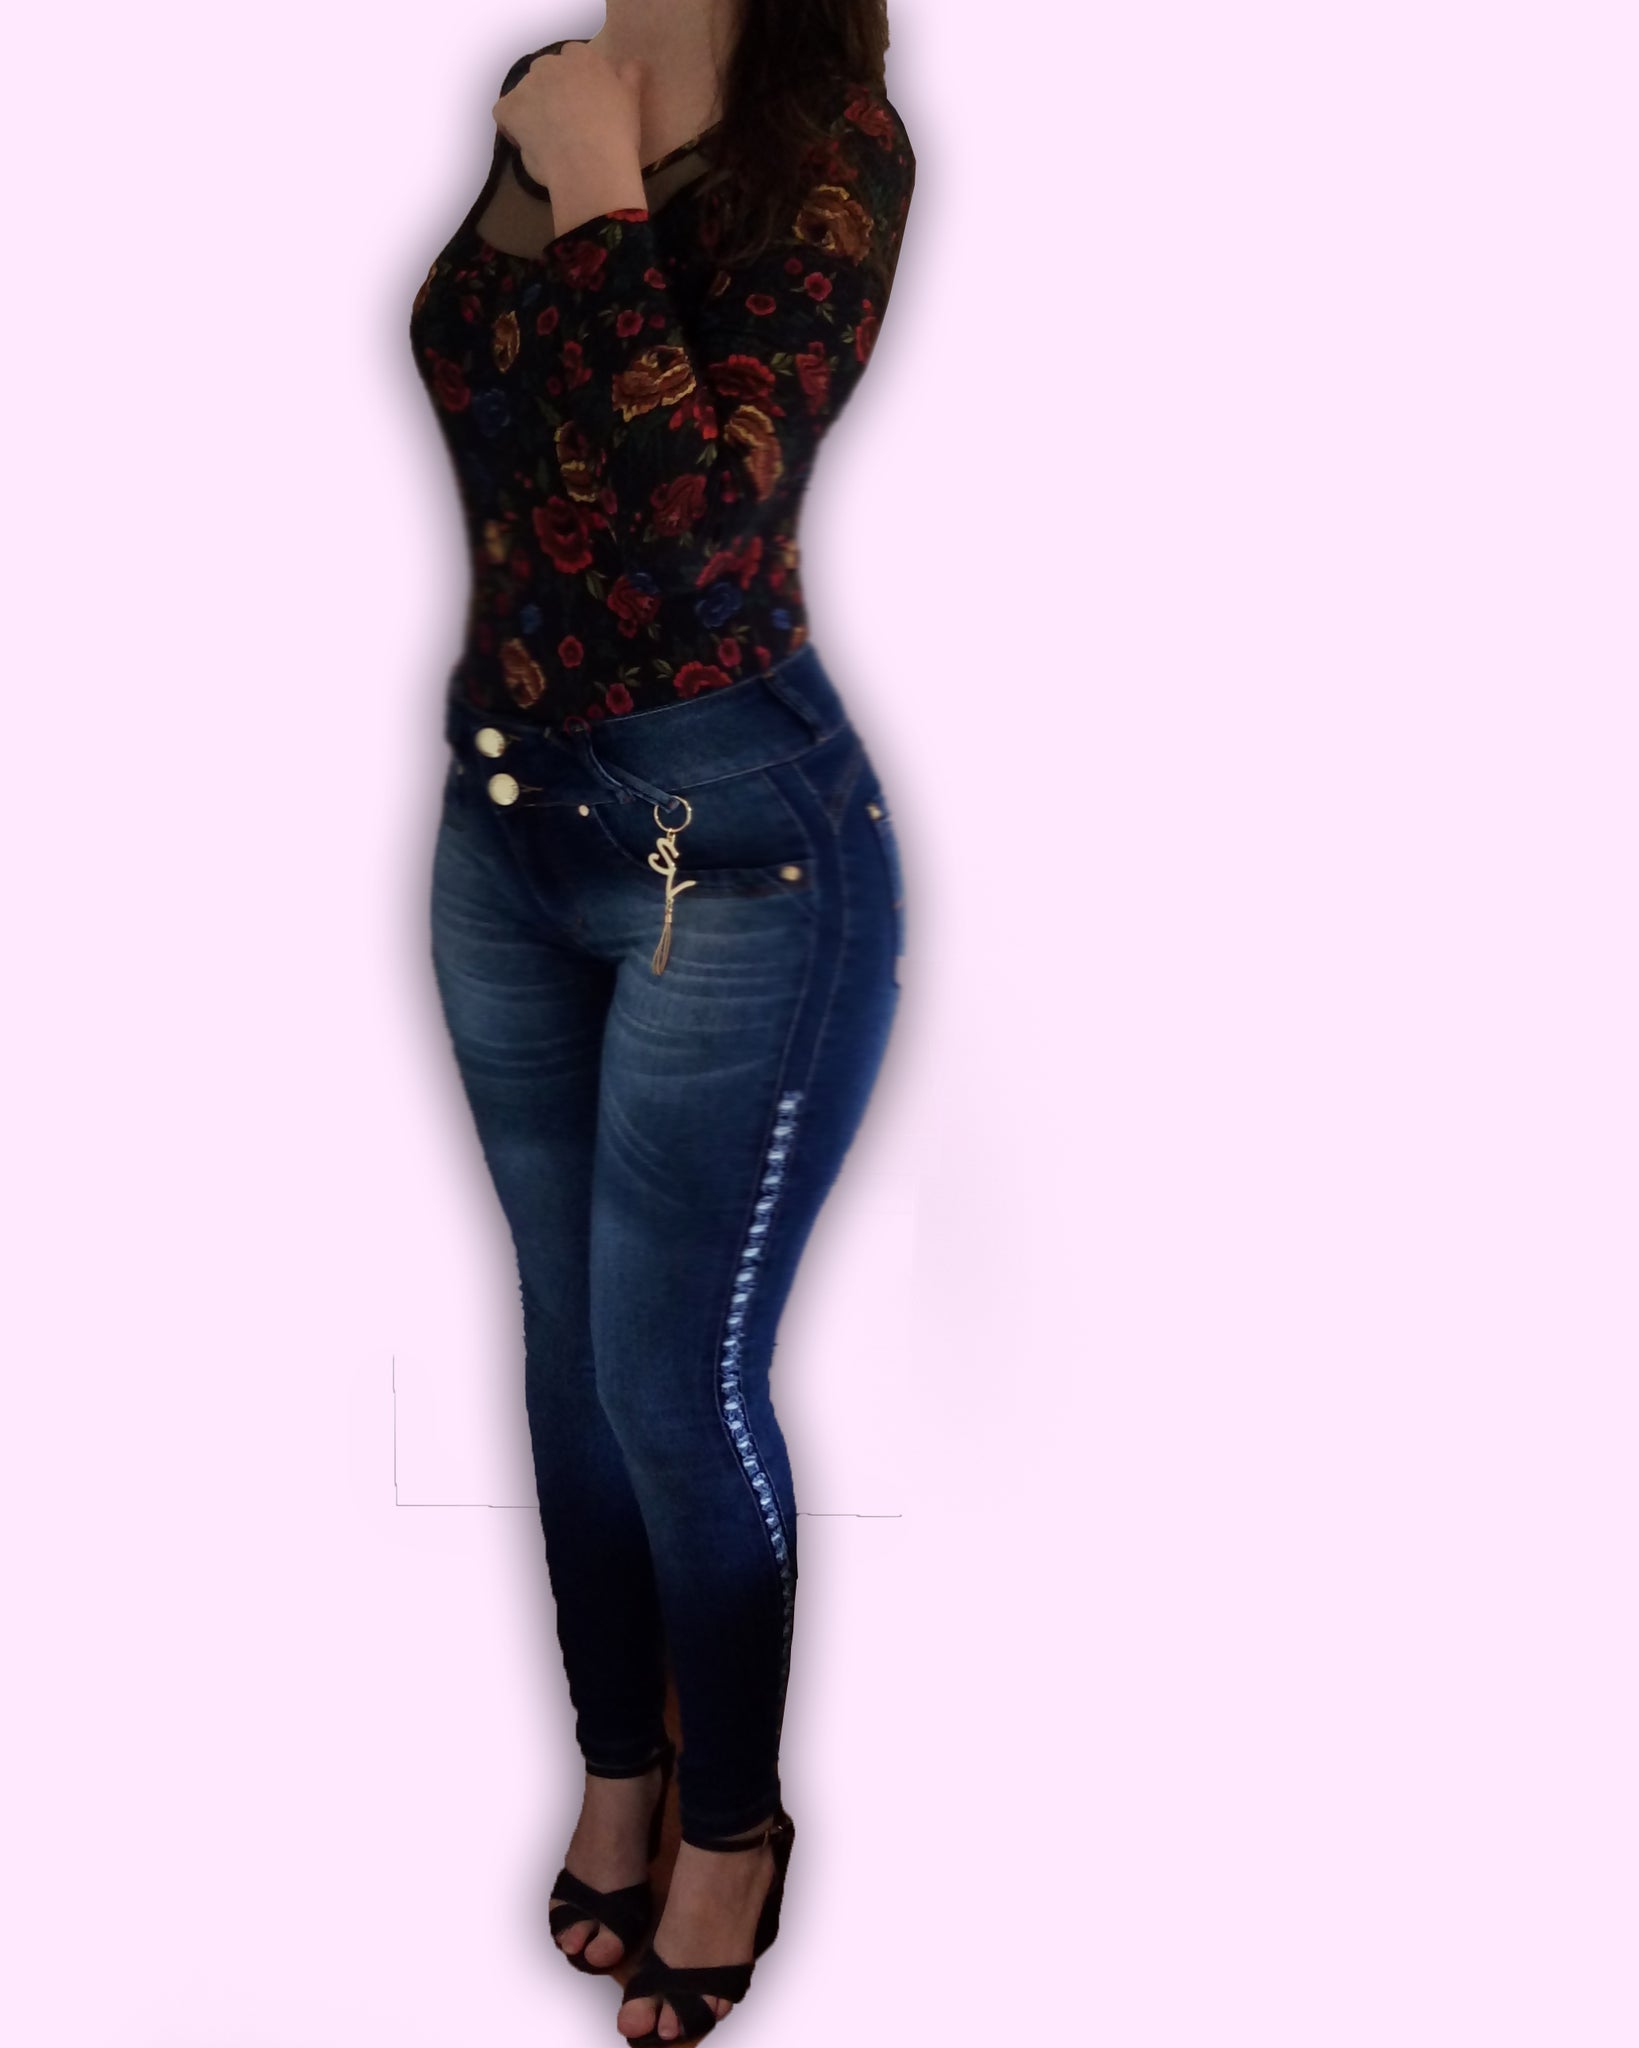 calça jeans molinho feminina